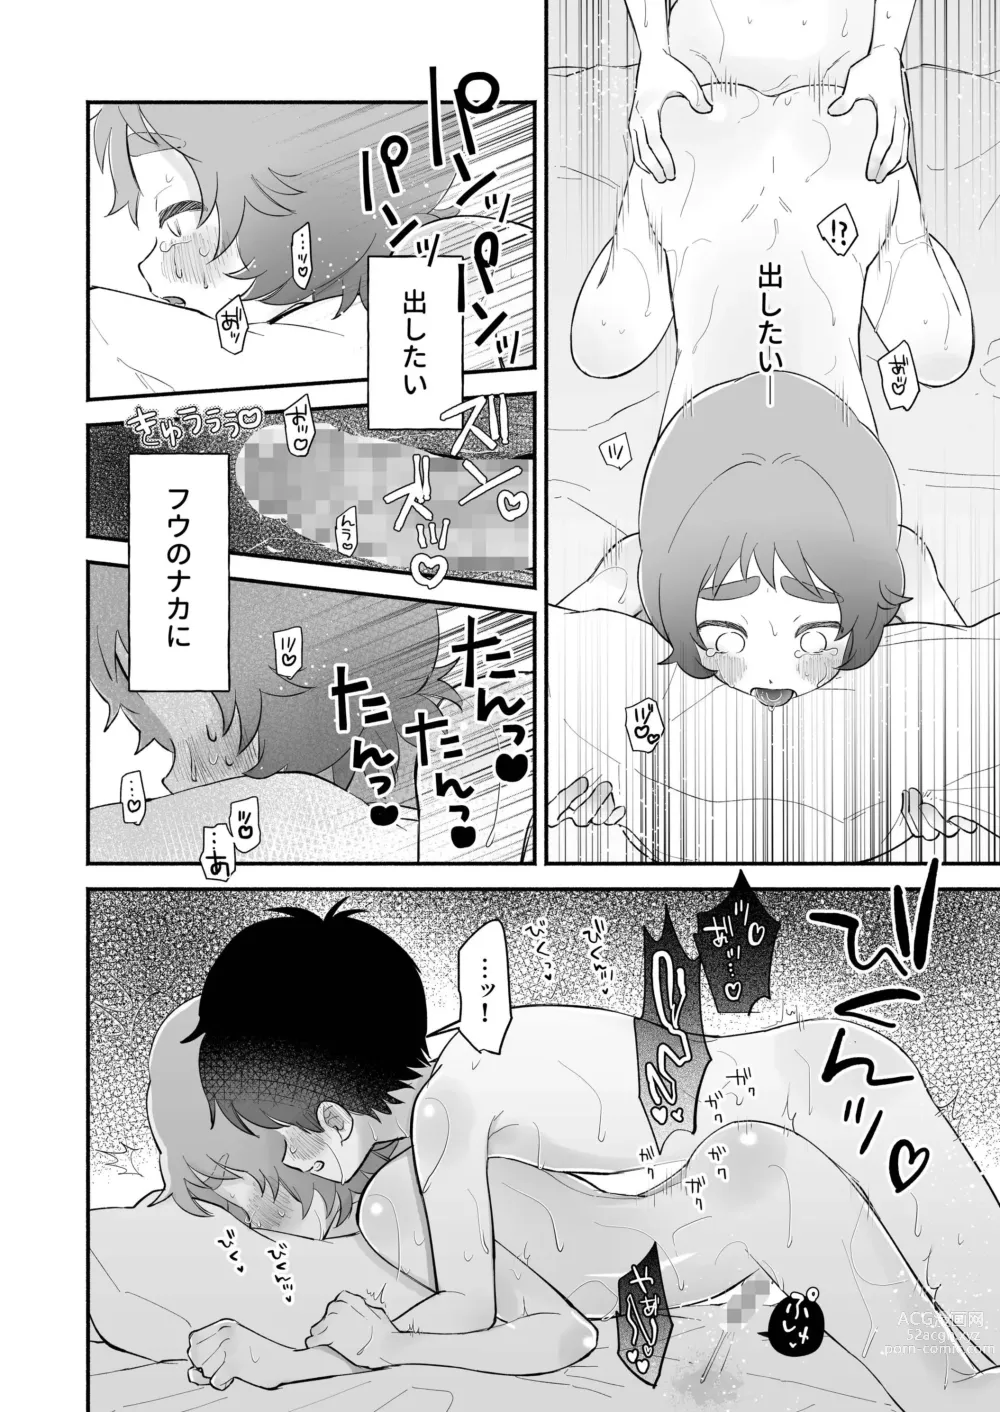 Page 34 of doujinshi Riku to Fuu Akachan Dekireba Kazoku ni Nareru no ka na